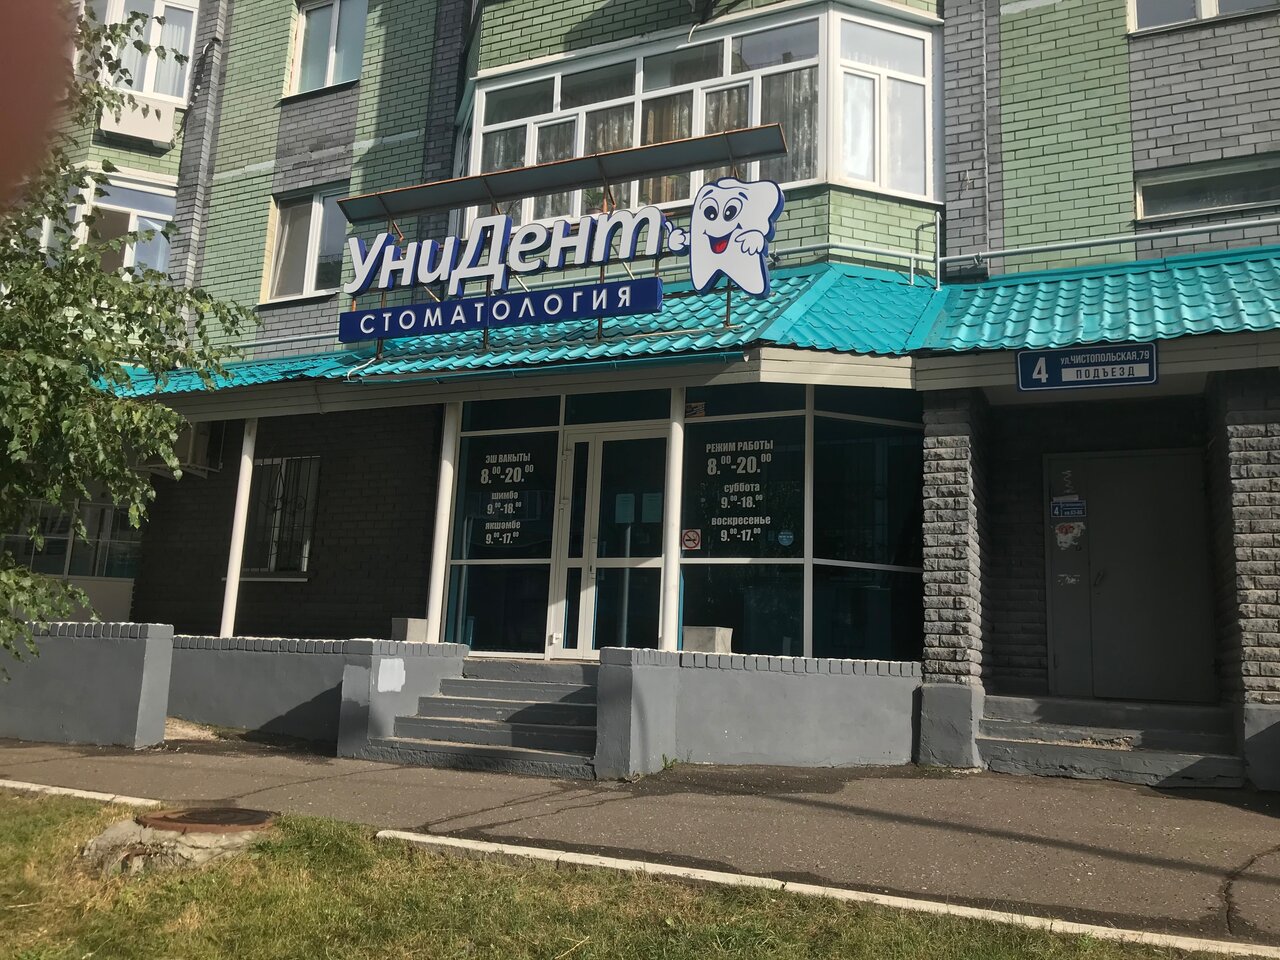 Унидент - Найдите проверенную стоматологию Yull.ru